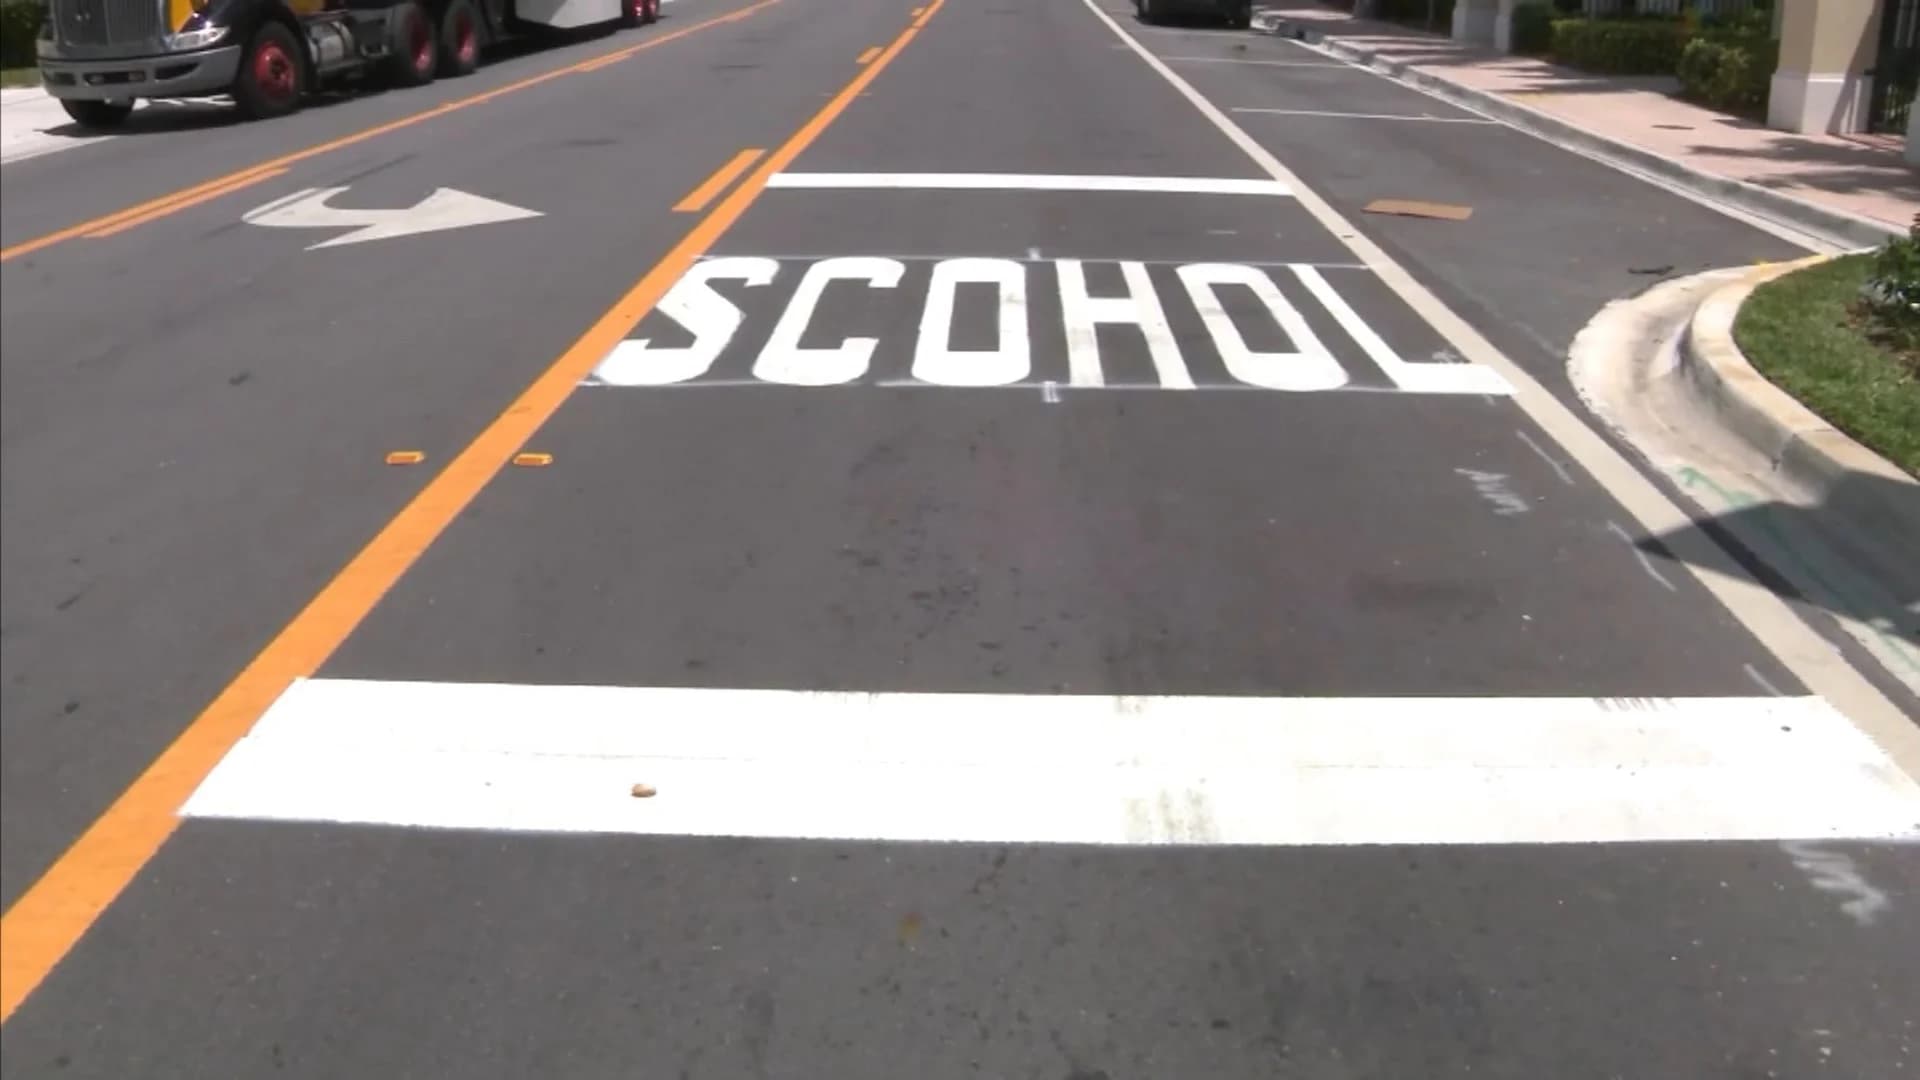 D'oh! Road crew misspells ‘SCHOOL’ on Florida town crosswalk